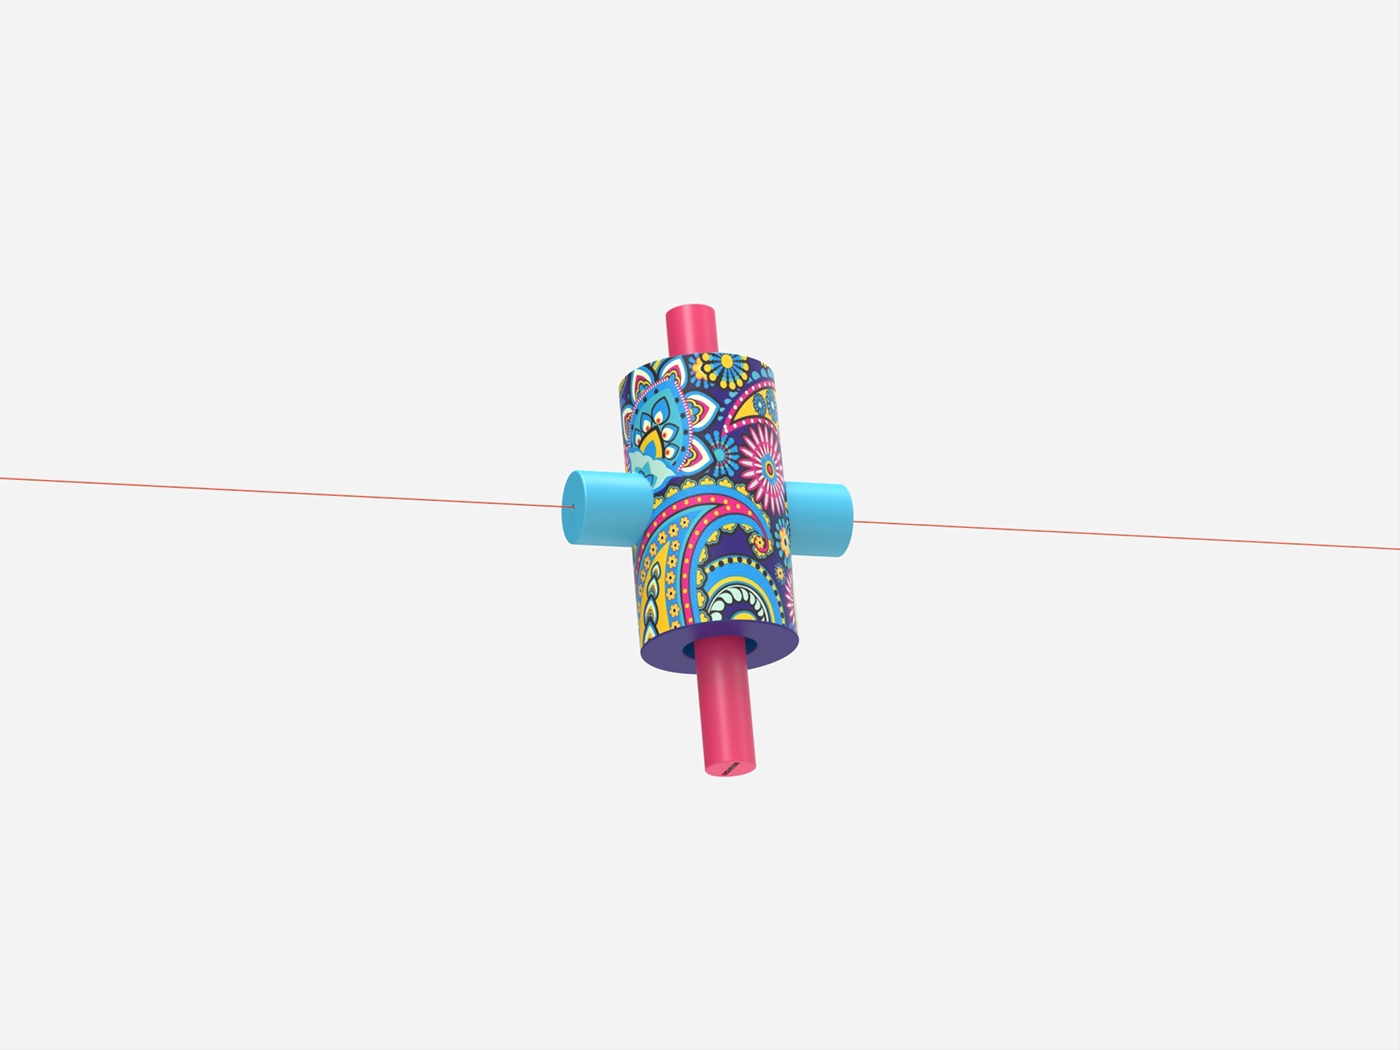 Render Form 3D Funk product design concept keyshot